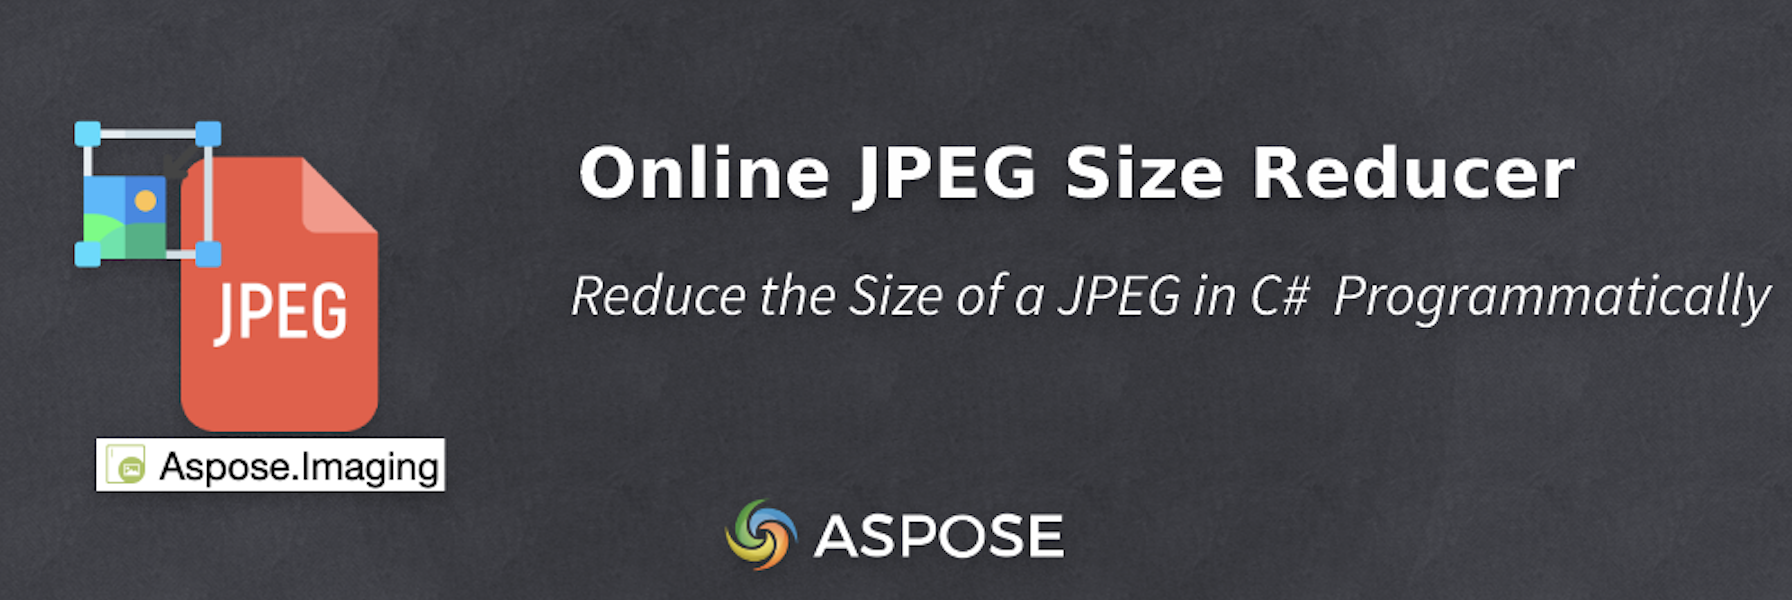 Reduza o tamanho de um JPEG em C# - Redutor de tamanho JPEG online